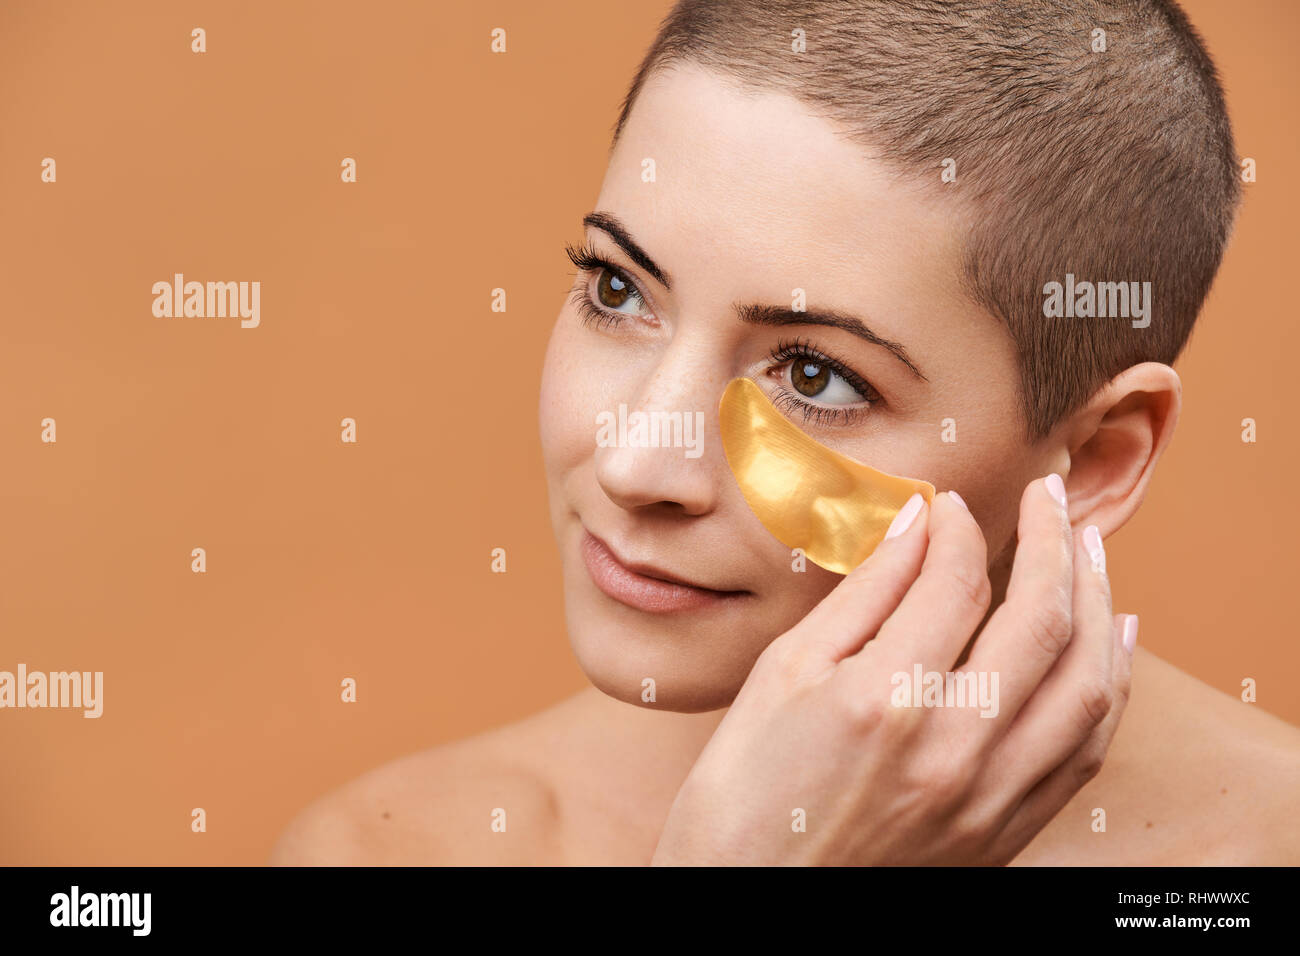 Lächelnd Mitte 30 Frau Anwendung gold Collagen Augenmaske. Foto von attraktiven kaukasische Frau mit Kopf rasiert und gesunde Haut isoliert auf beige backgro Stockfoto